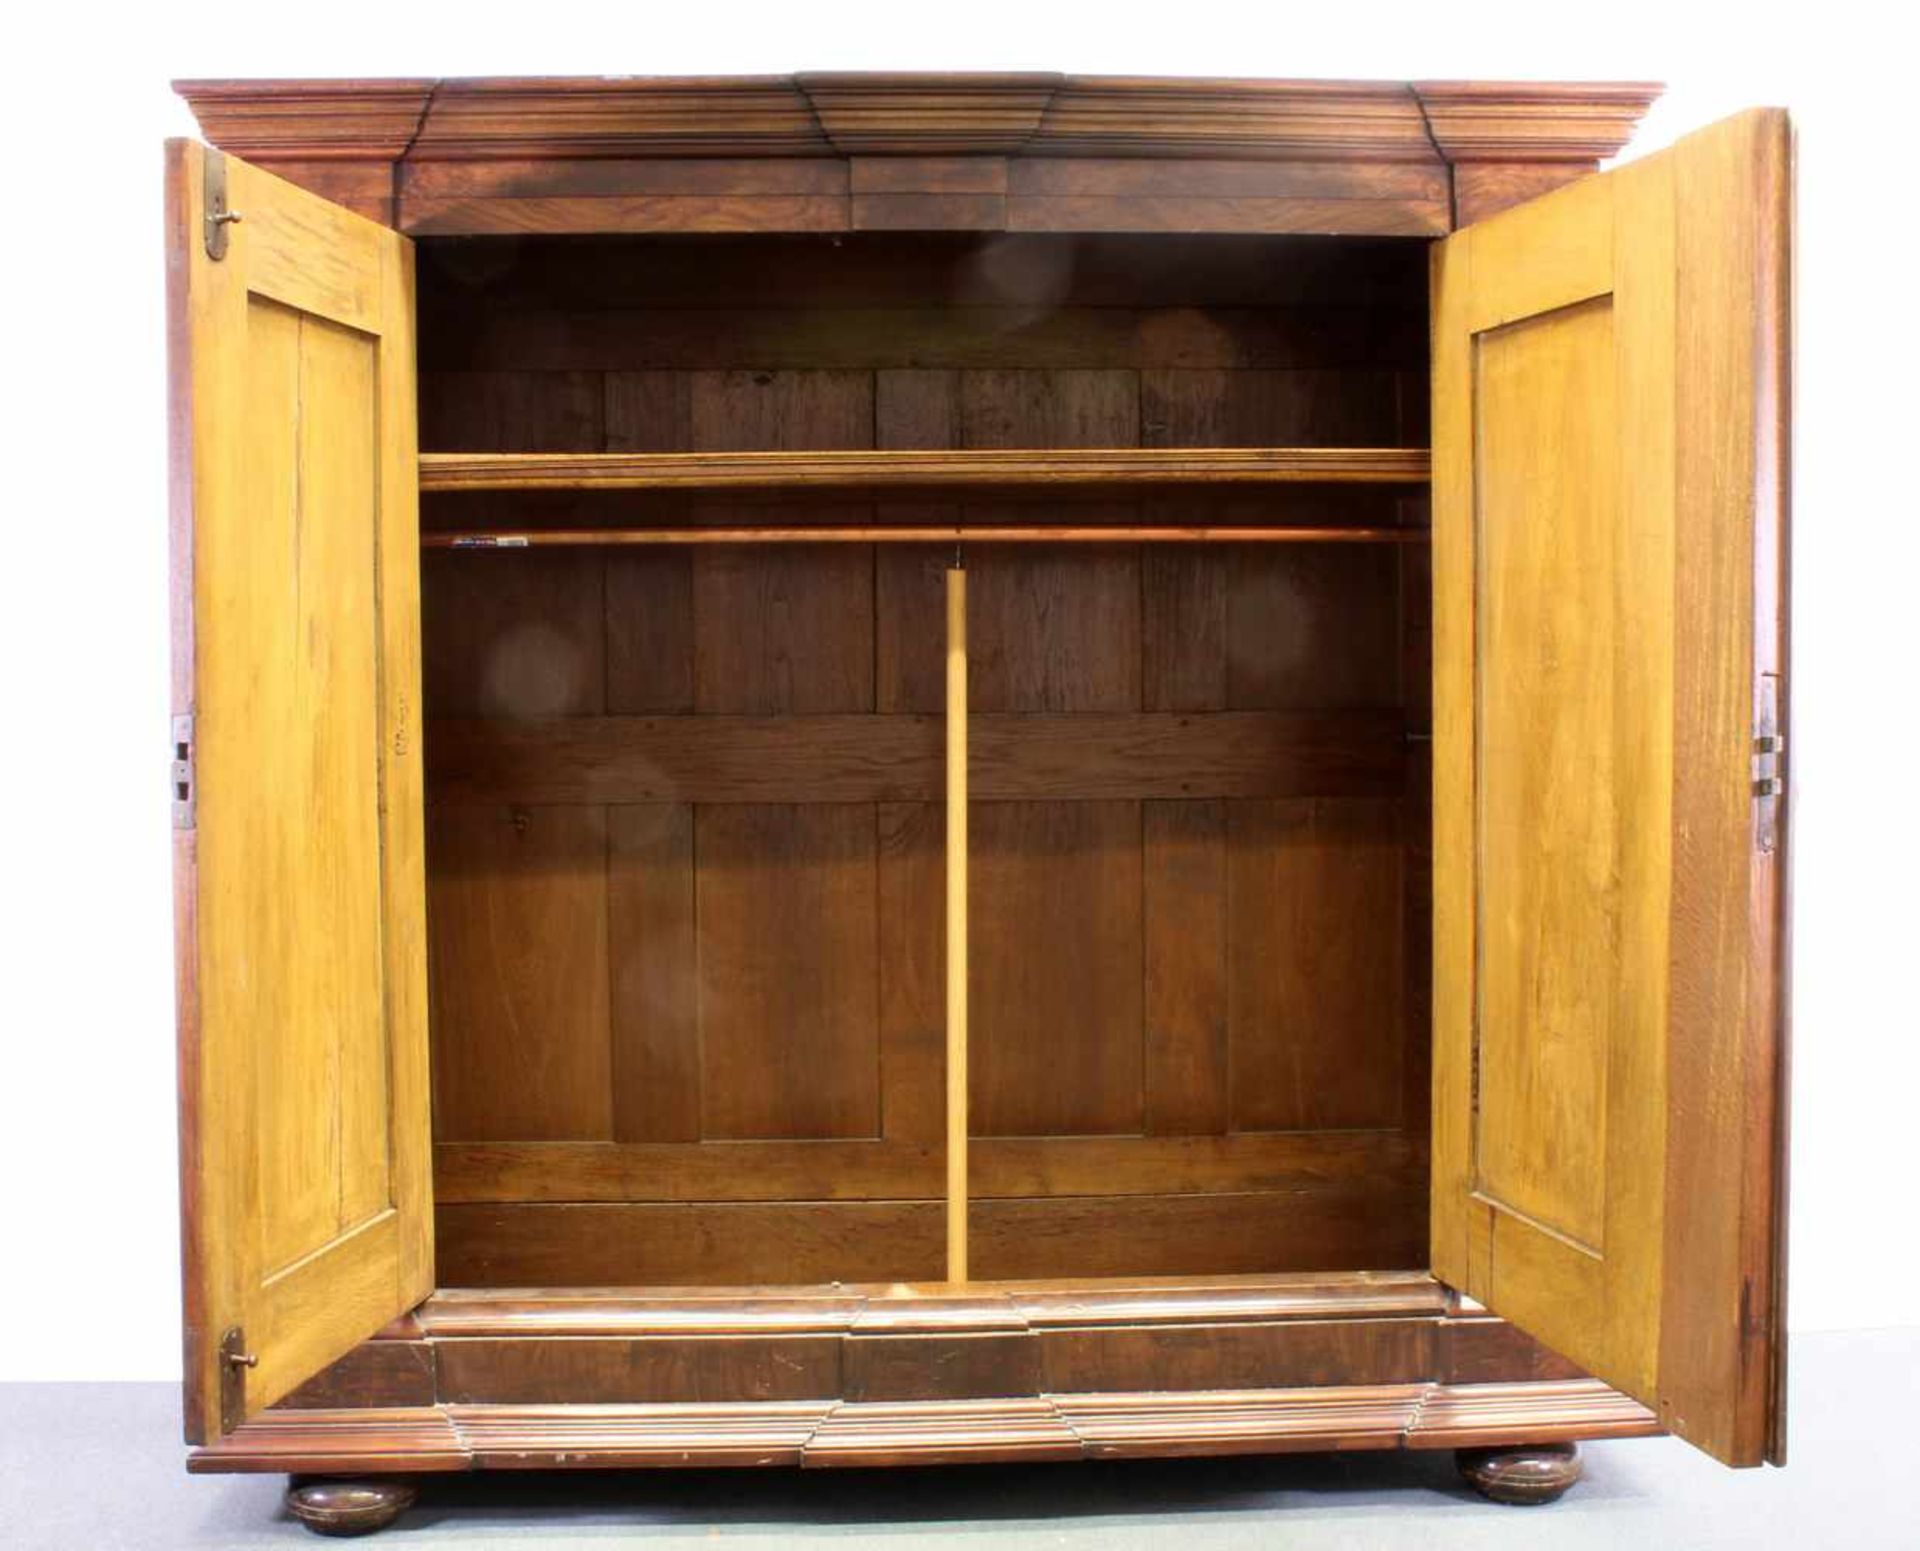 Dielenschrank, um 1800, Nussholz, zweitürig, Türen mit Bandeinlagen, 189 x 193 x 68 cm, Gebrauchs- - Bild 2 aus 2